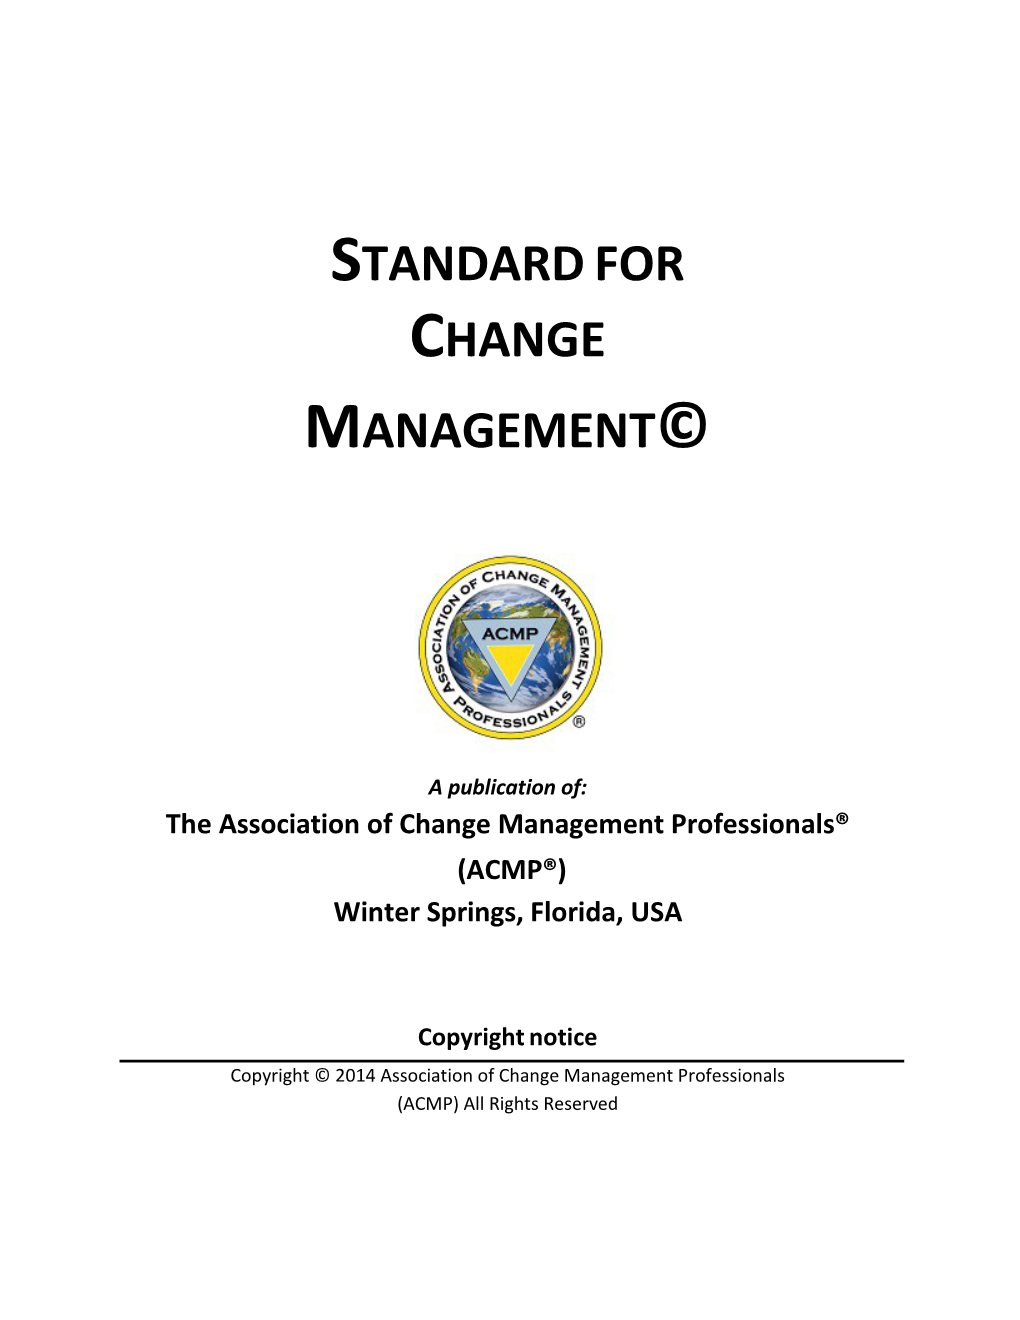 ACMP's Standard for Change Management